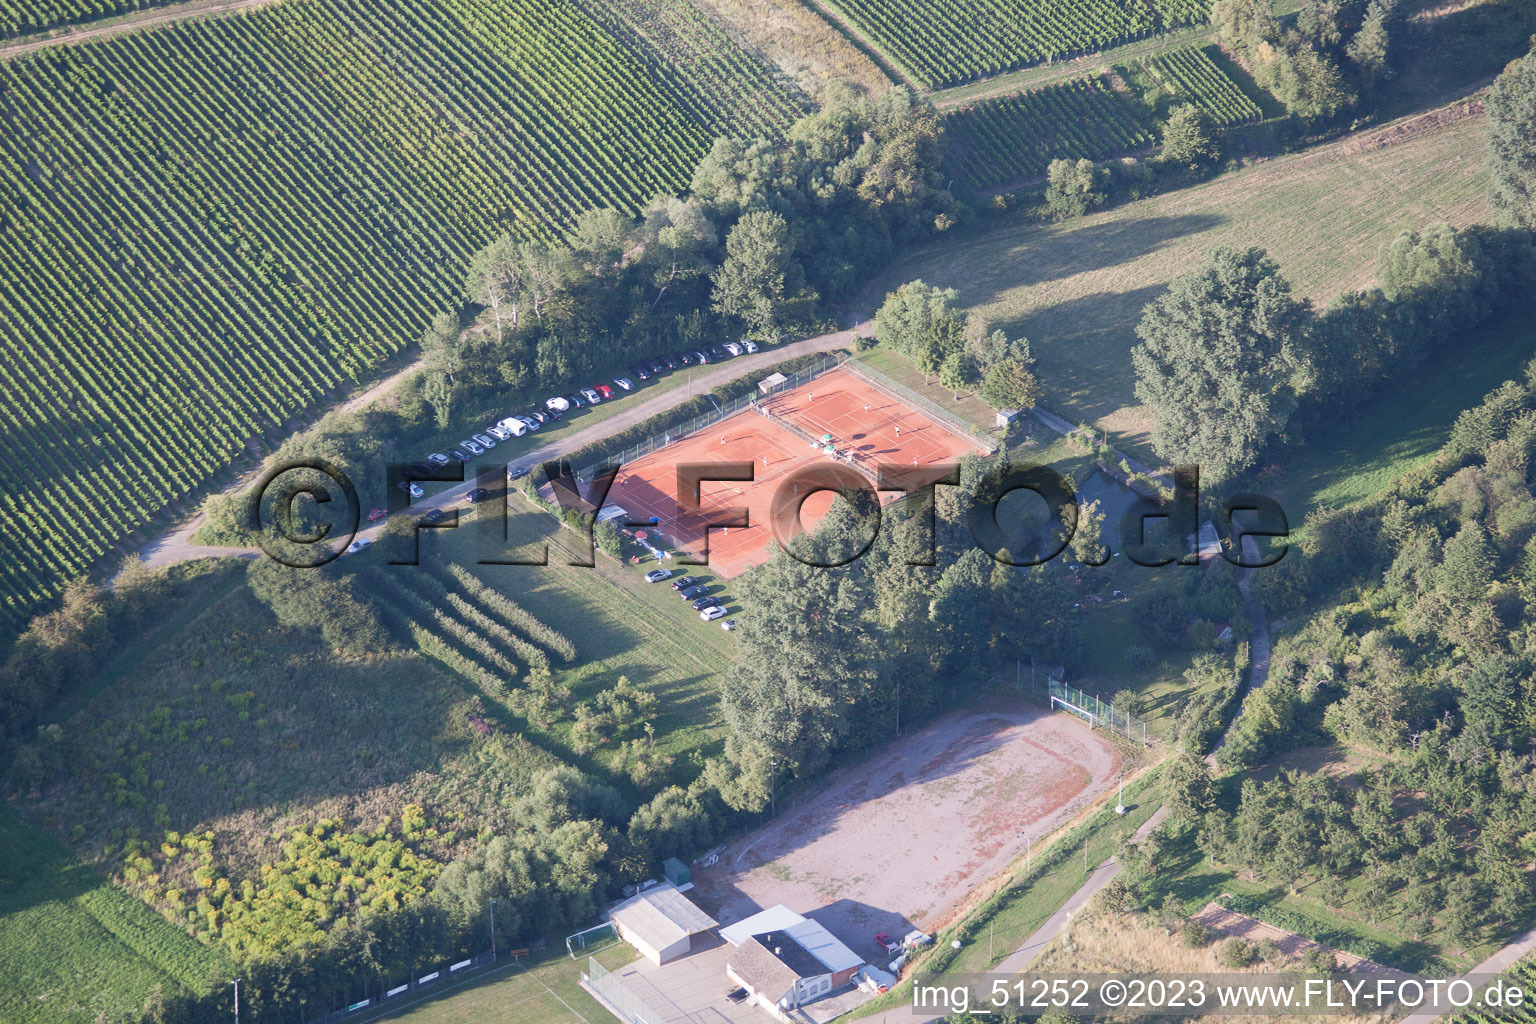 Vue aérienne de Club de tennis à Oberotterbach dans le département Rhénanie-Palatinat, Allemagne